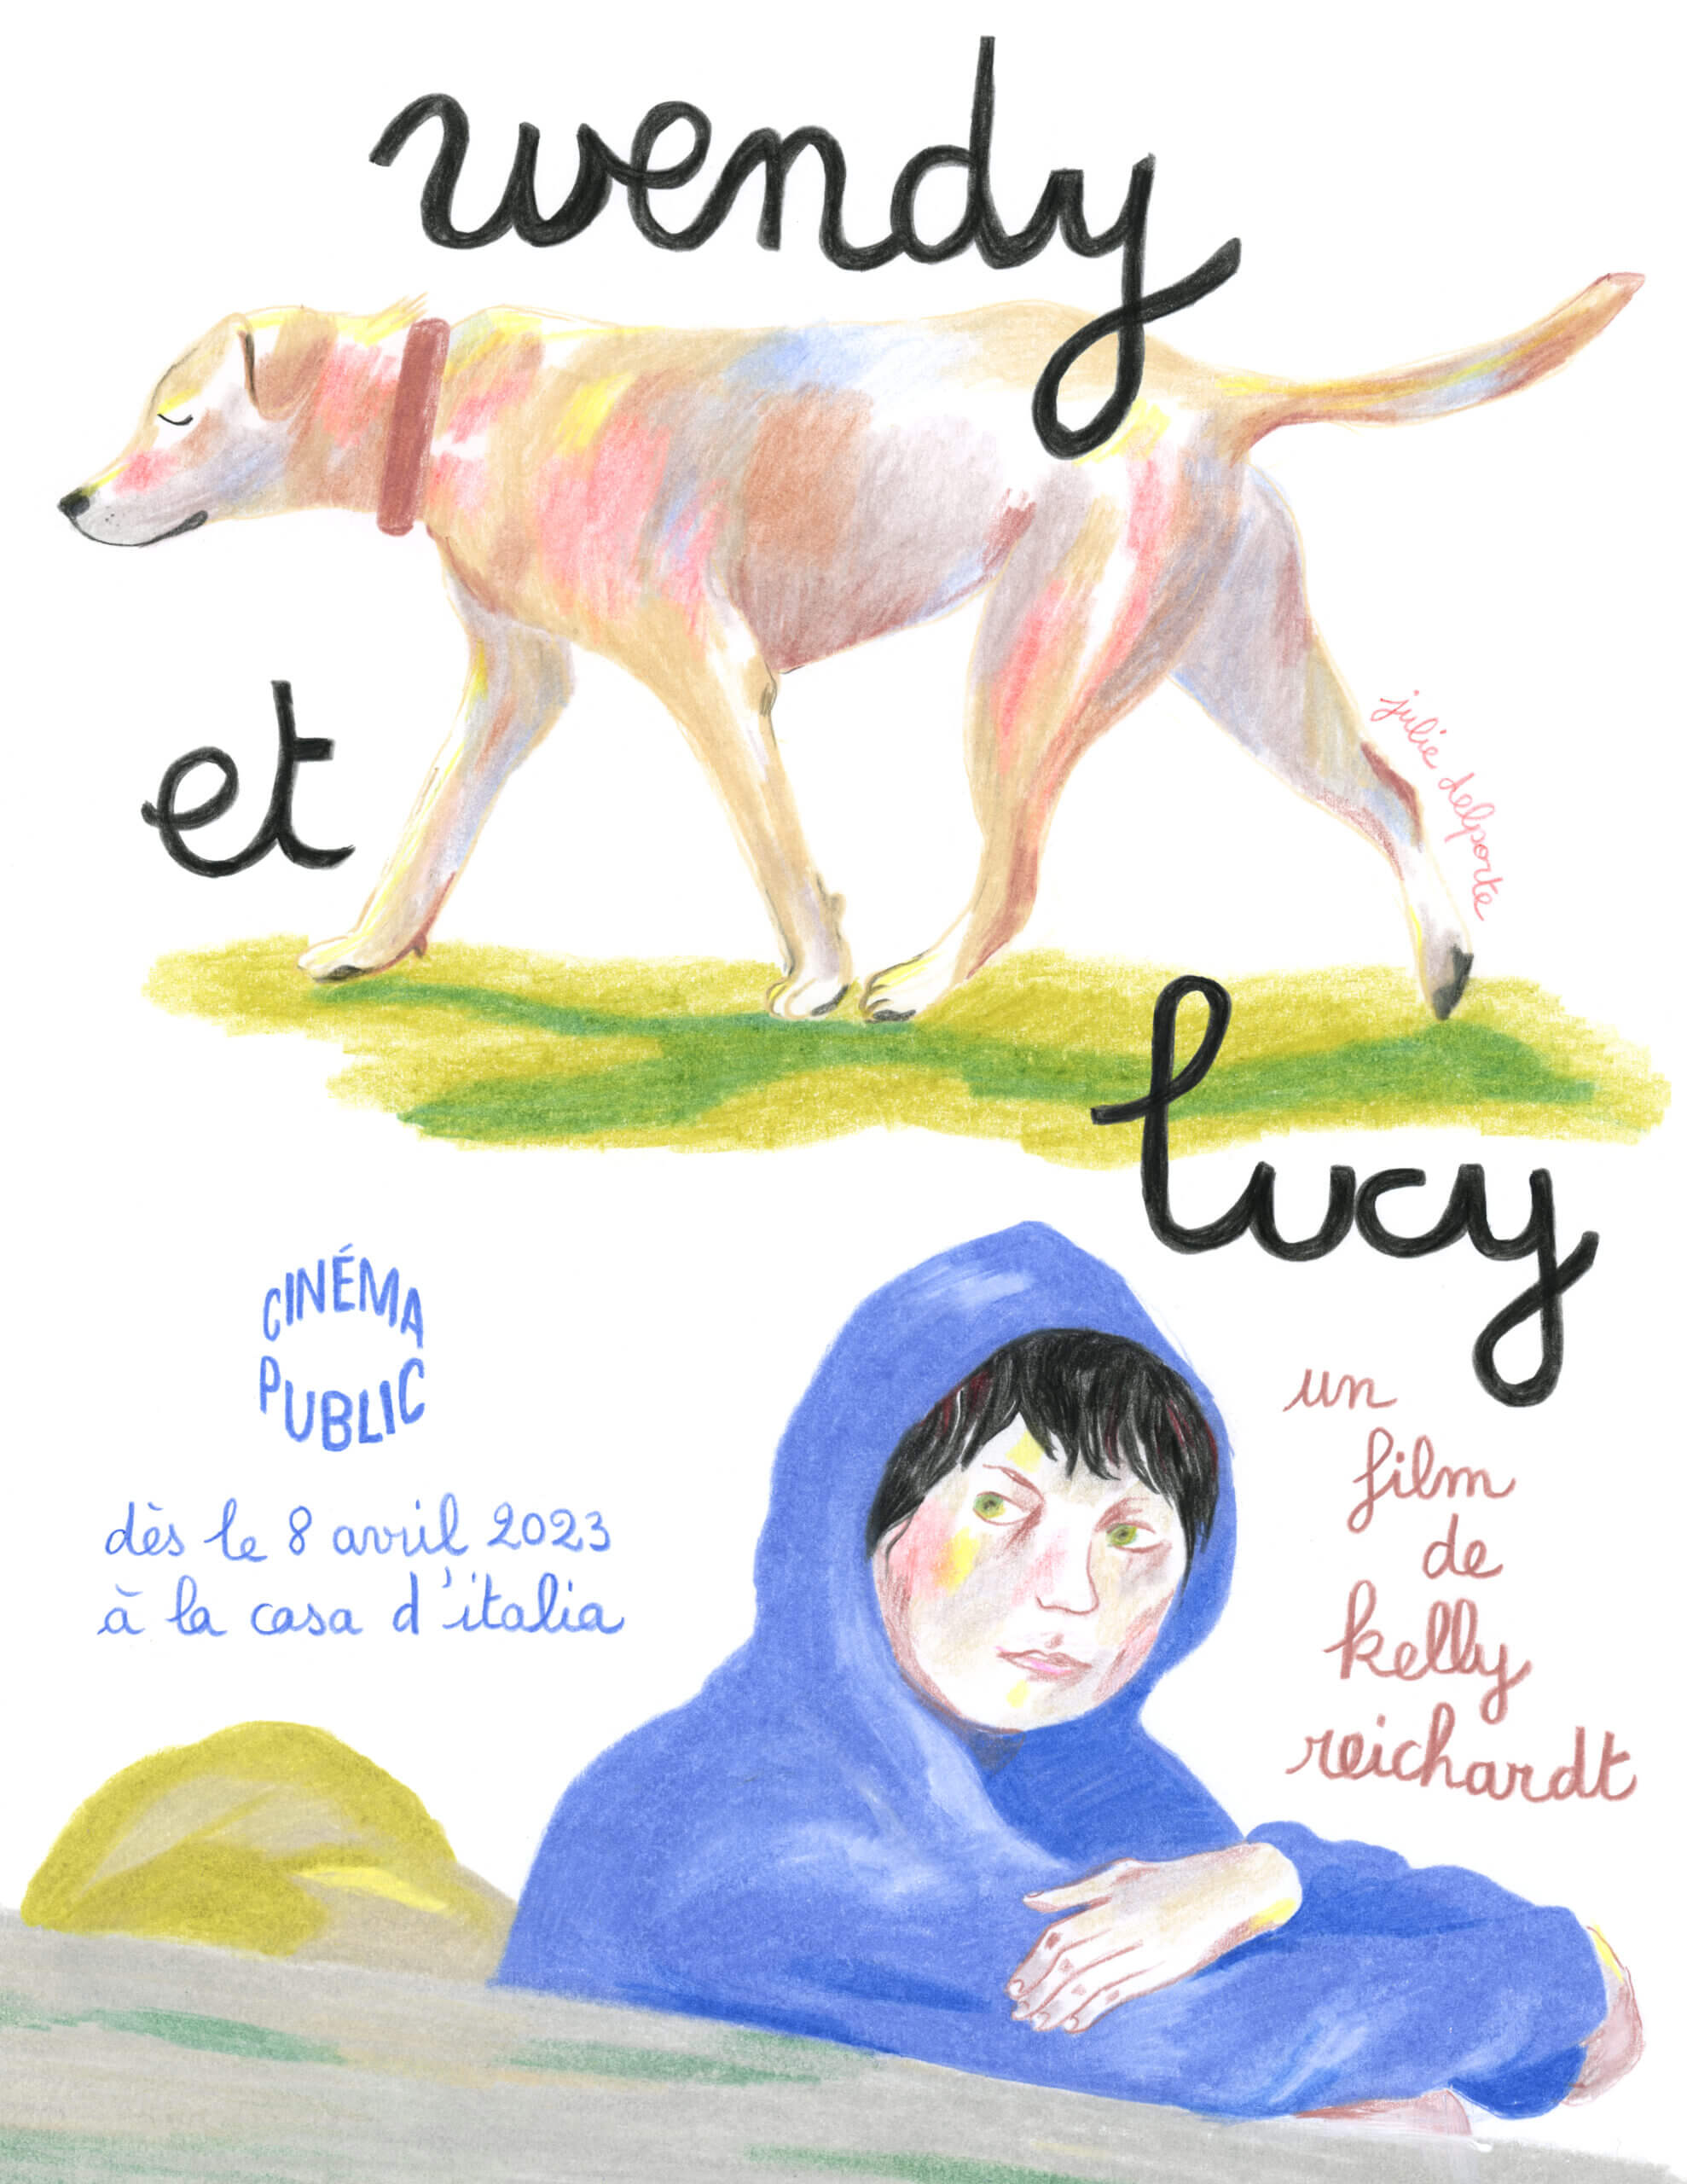 Affiche du film WENDY AND LUCY (Wendy et Lucy) de Kelly Reichardt dessinée par Julie Delporte pour le Cinéma Public